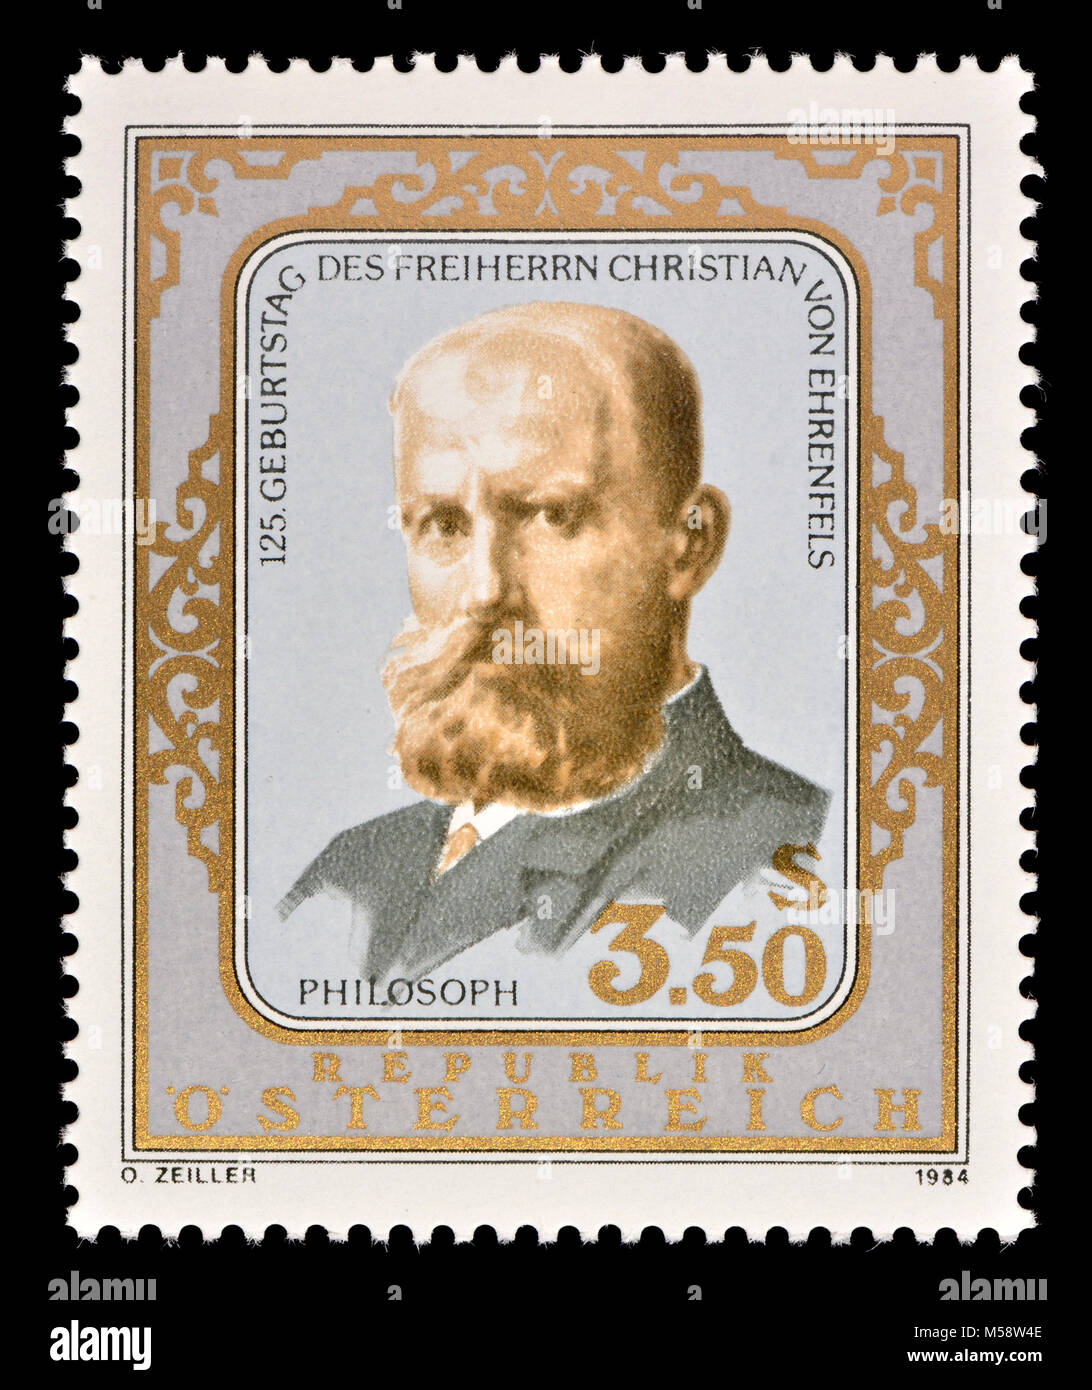 Austrian postage stamp (1984) : Christian von Ehrenfels (Maria Christian Julius Leopold Freiherr von Ehrenfels; 1859 – 1932)  Austrian philosopher, .... Stock Photo